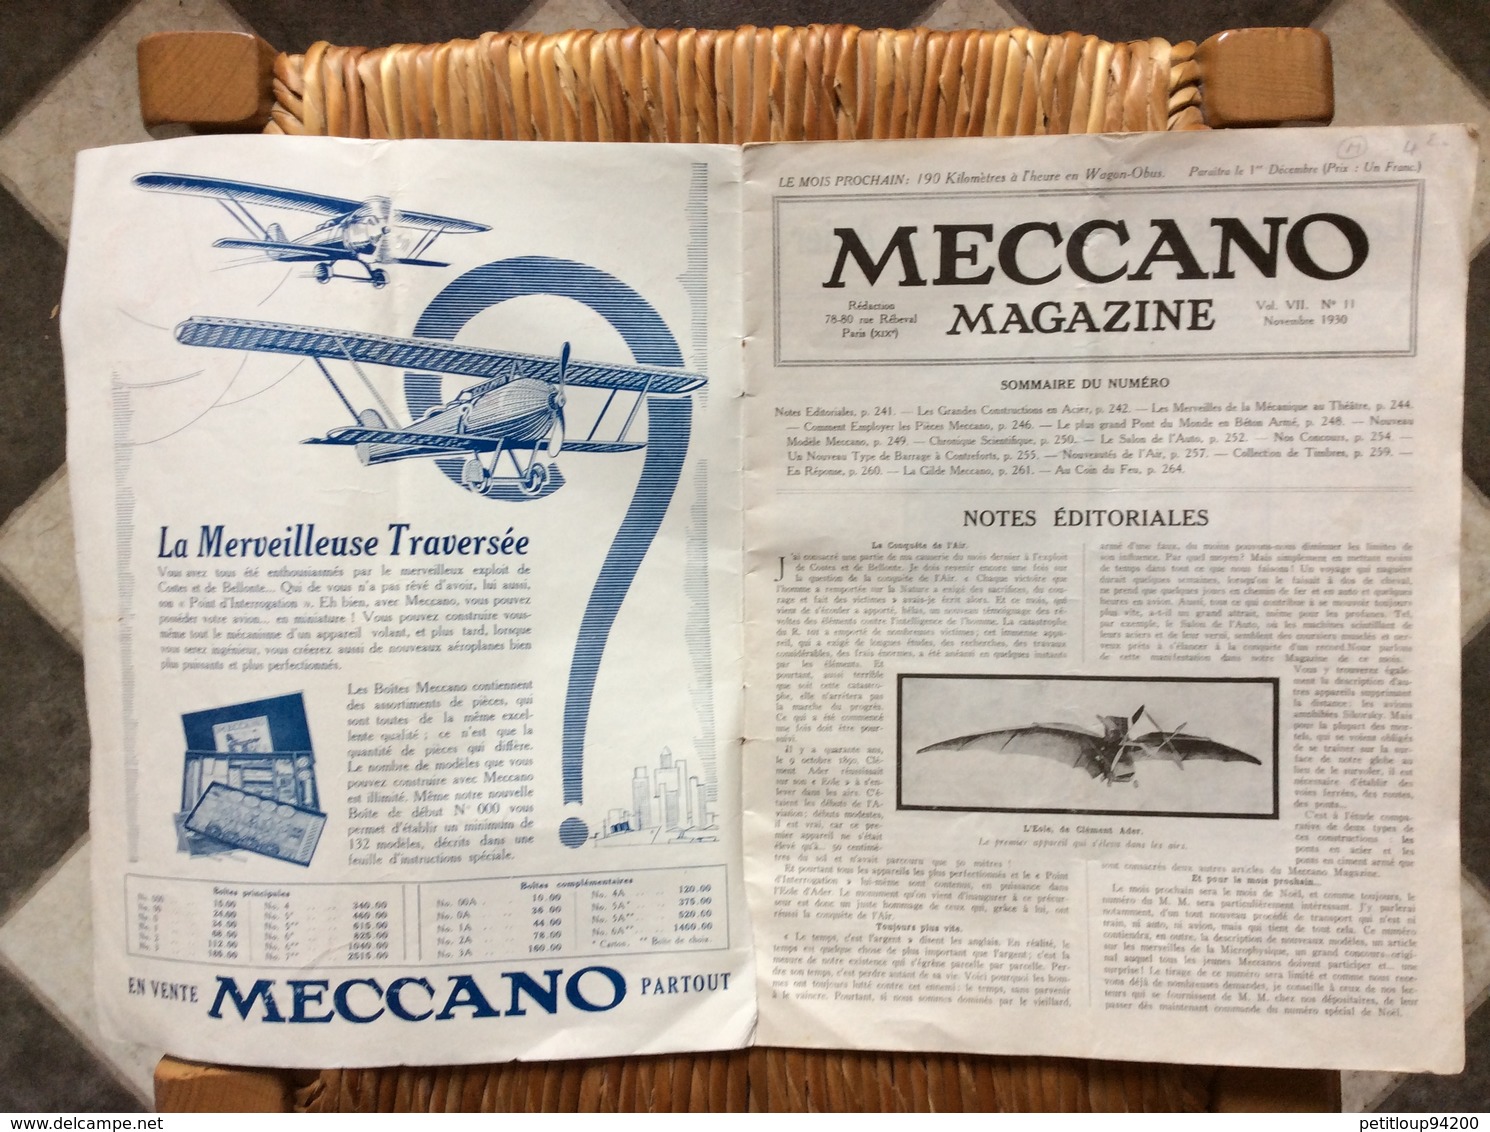 MECCANO MAGAZINE No11 Novembre 1930 - Meccano